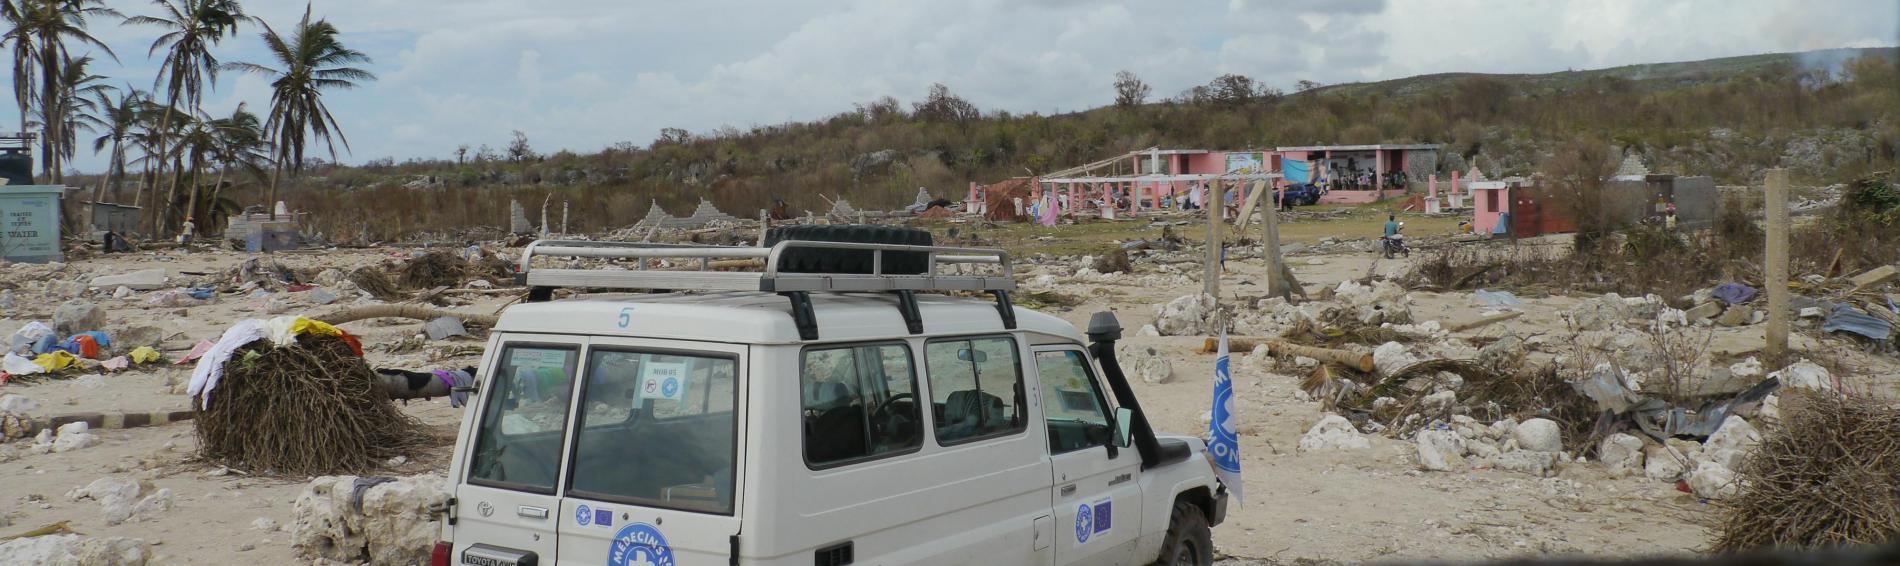 À Haïti, sur une place, une voiture de Médecins du Monde est garée devant un paysage de catastrophe : les maisons sont presque à terre, les toits envolés, les débris jonchent le sol.